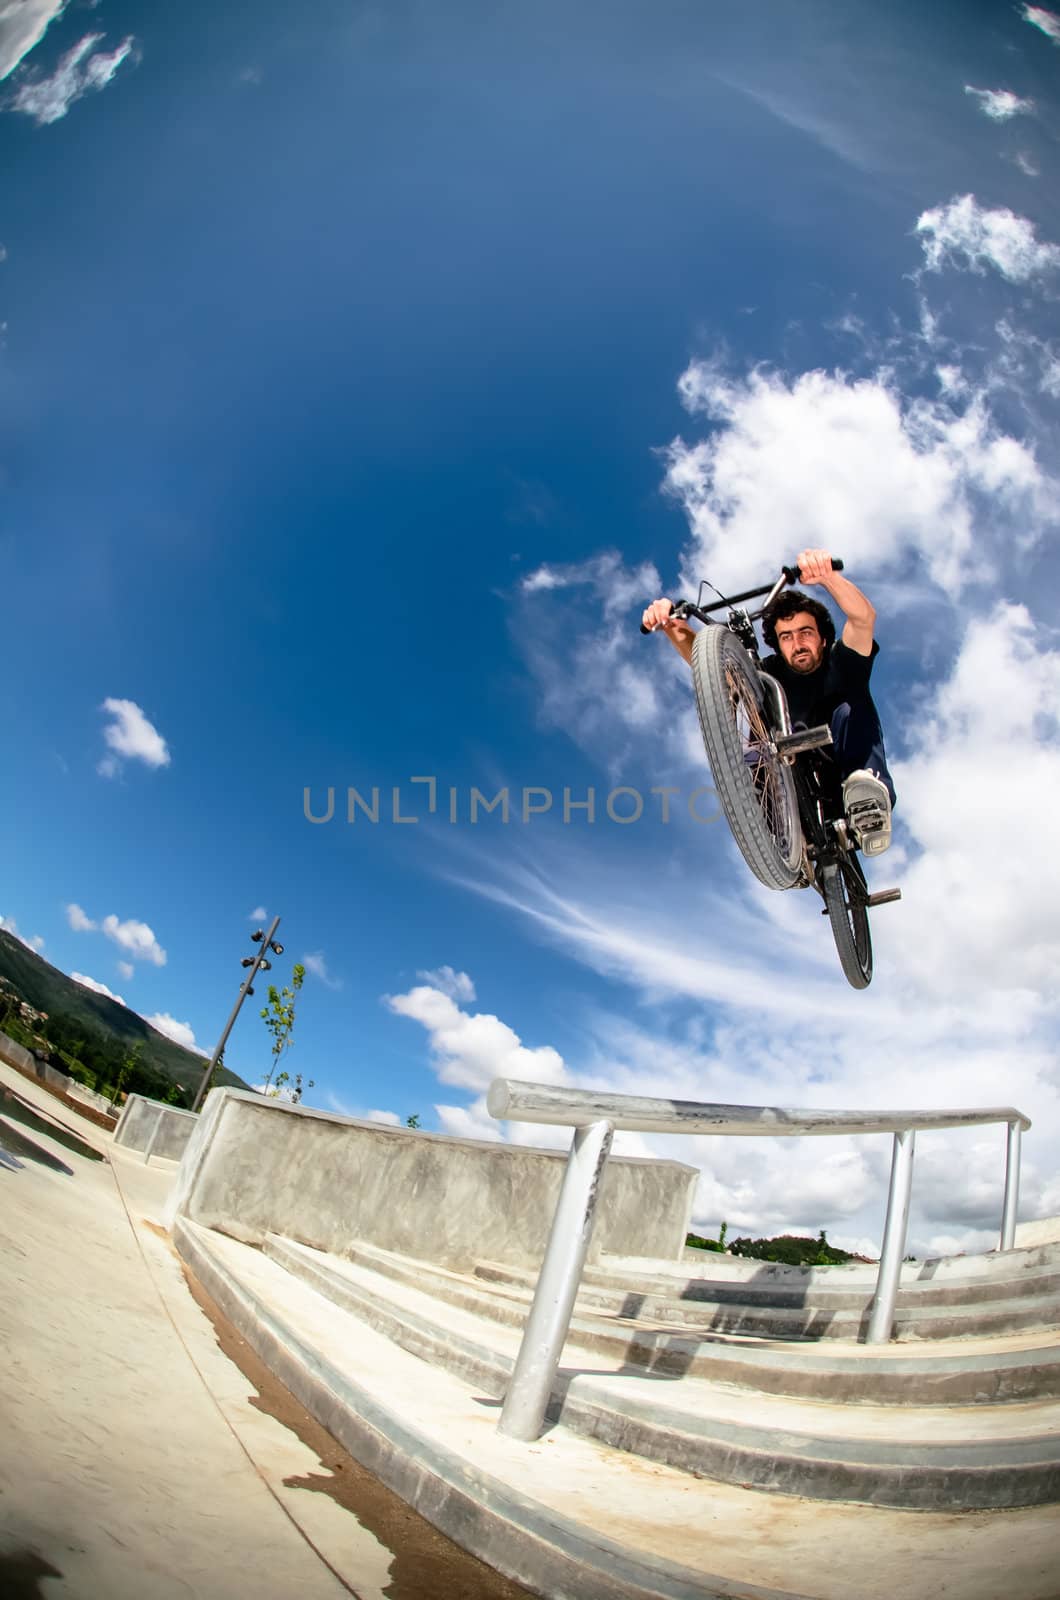 Bmx rider on a big air jump in a skate park.